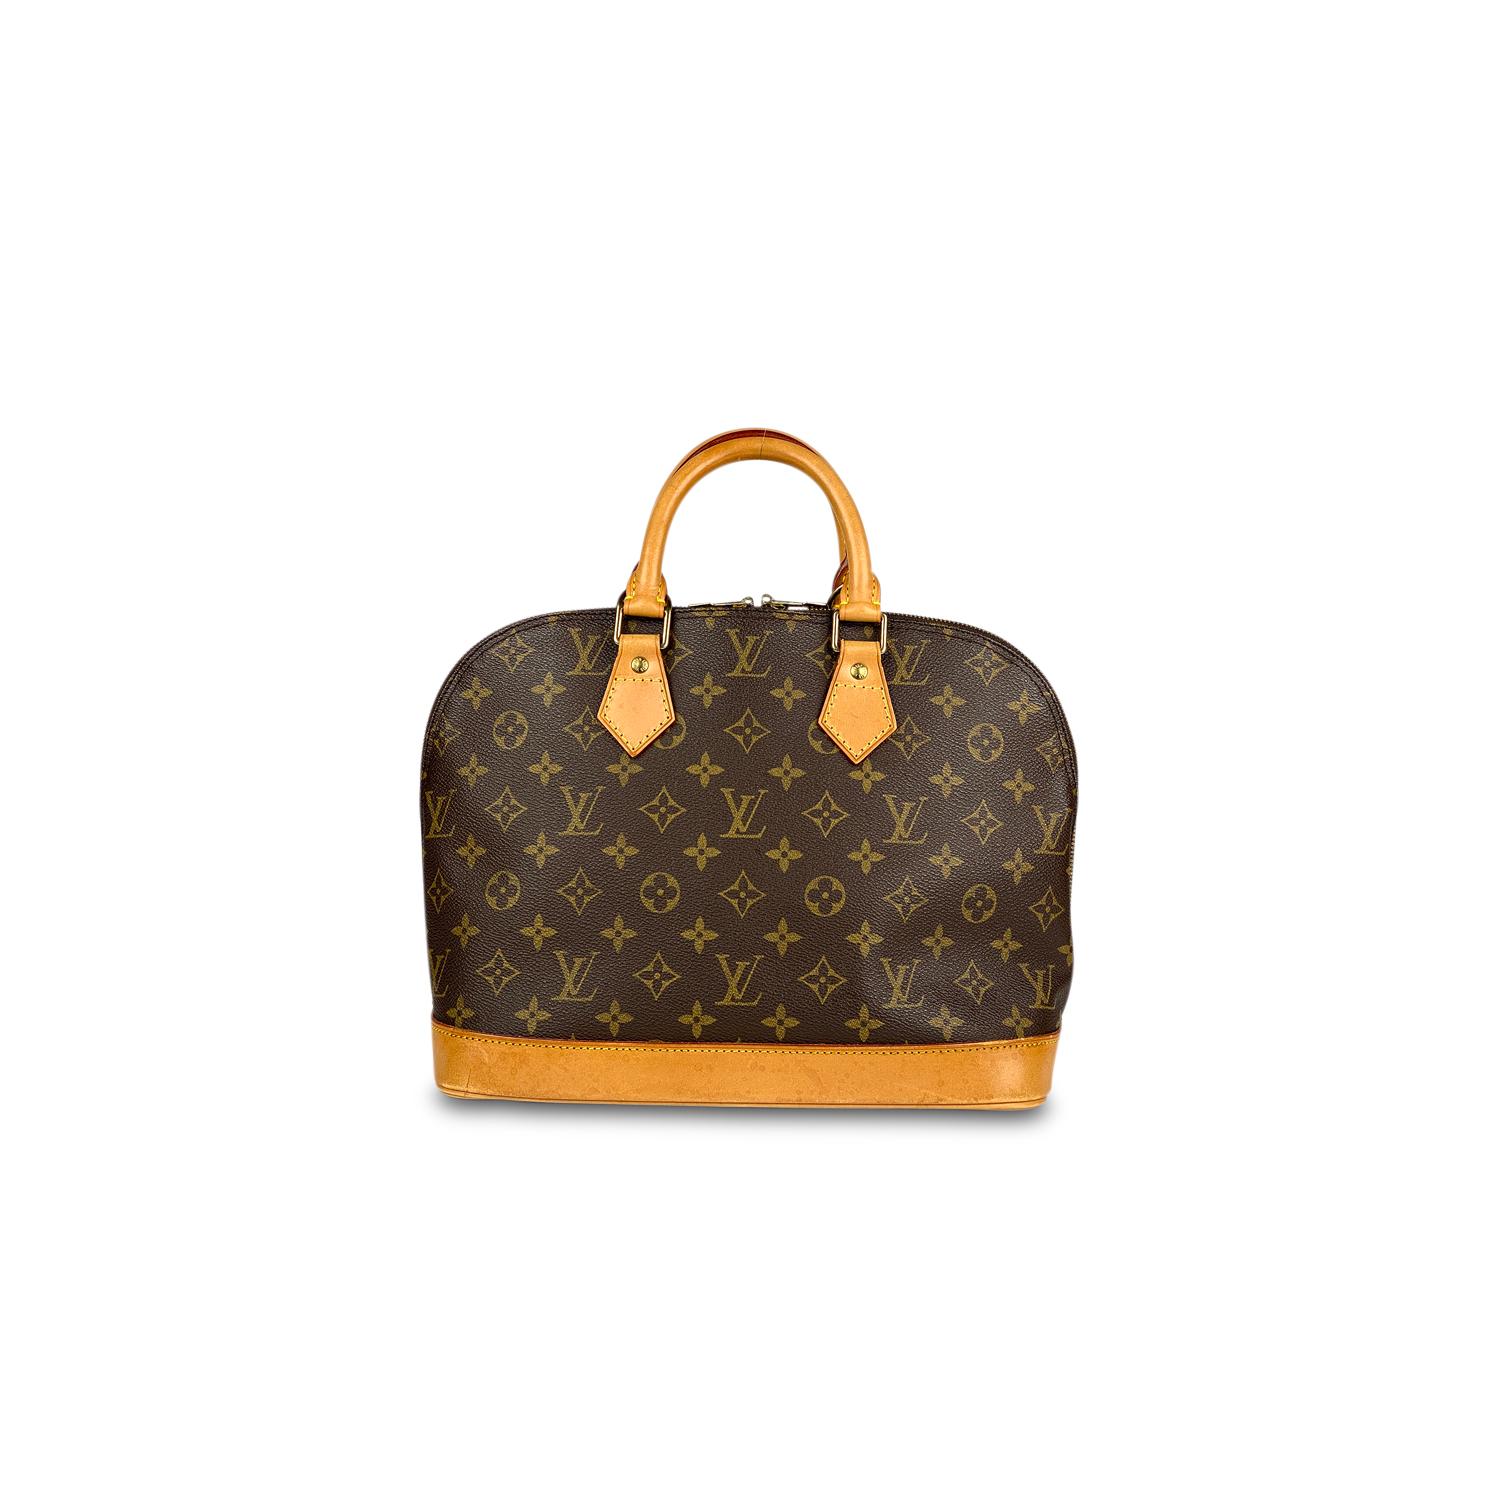 Black Louis Vuitton Monogram Alma PM Handbag